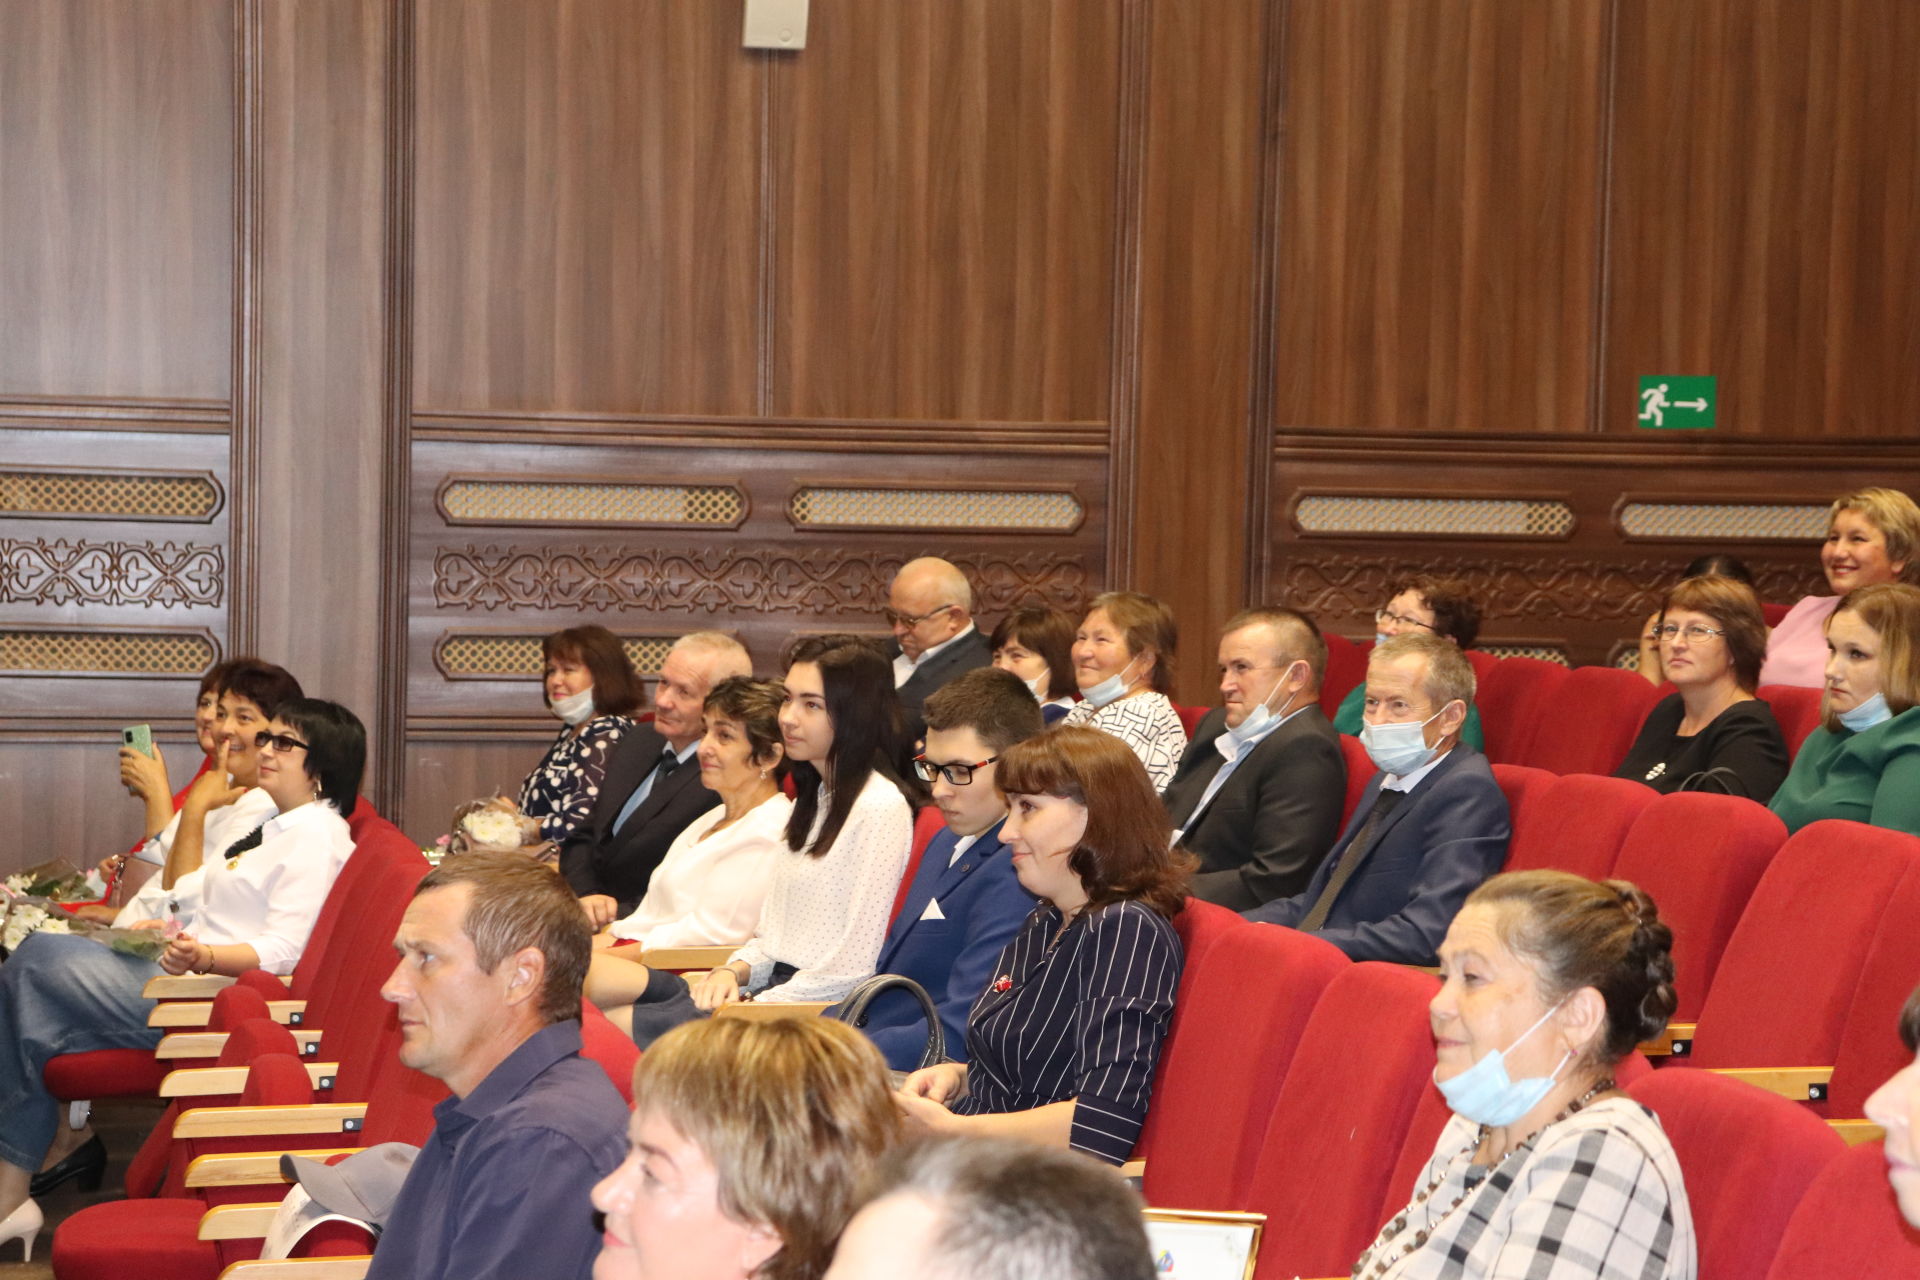 В Алькеевском районе состоялось августовское совещание учителей